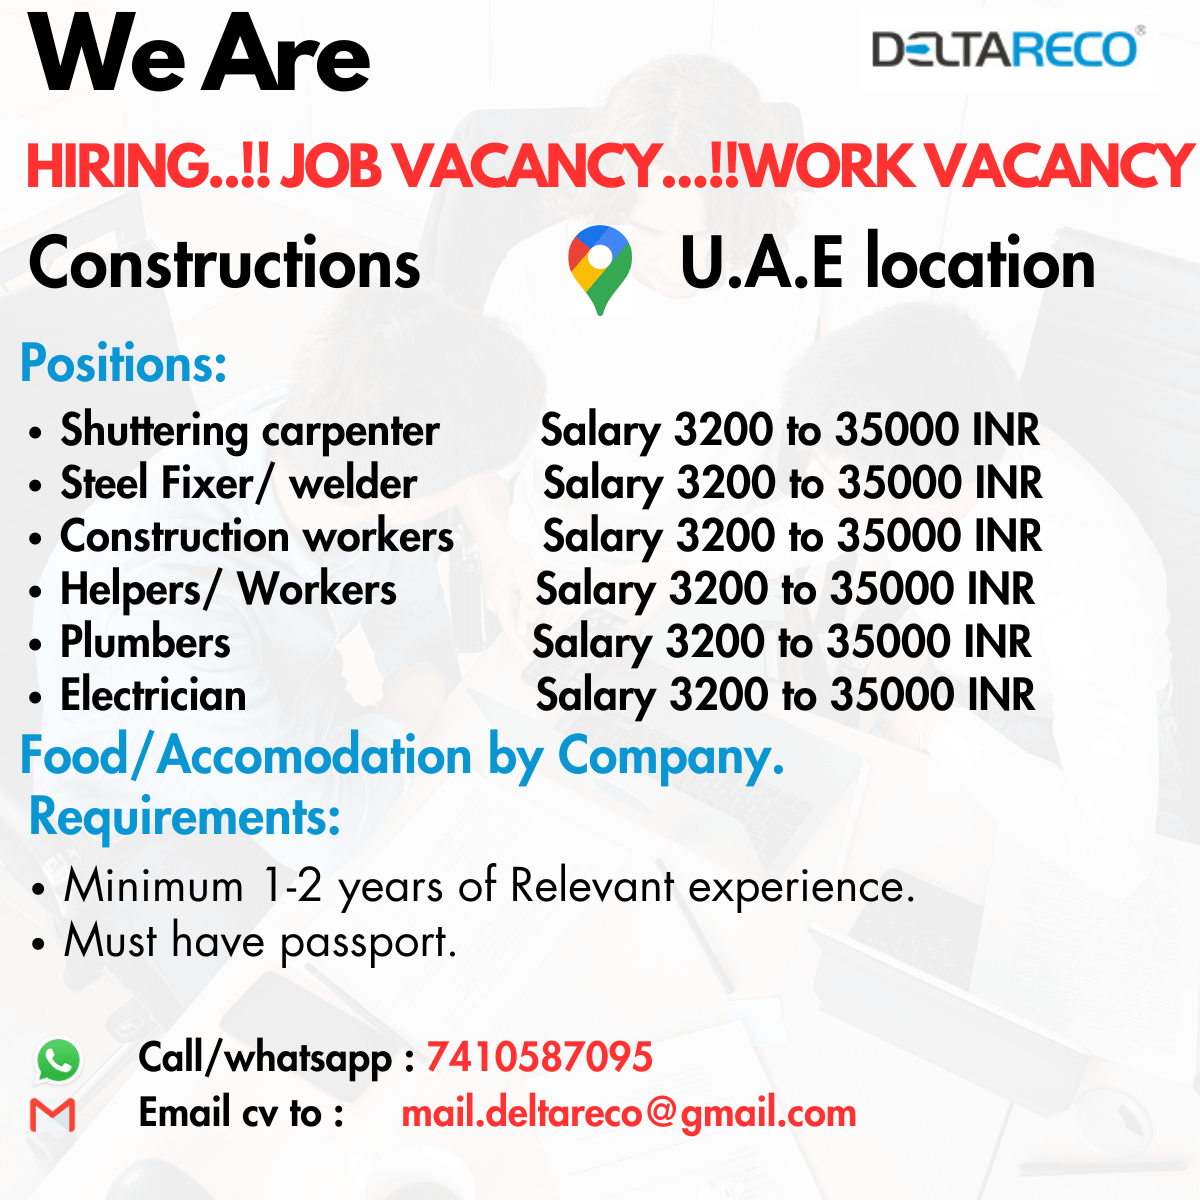 we are hiring Electrician/ shuttering carpenter/ masons/ steel worker/ welders/ Plumbers for UAE